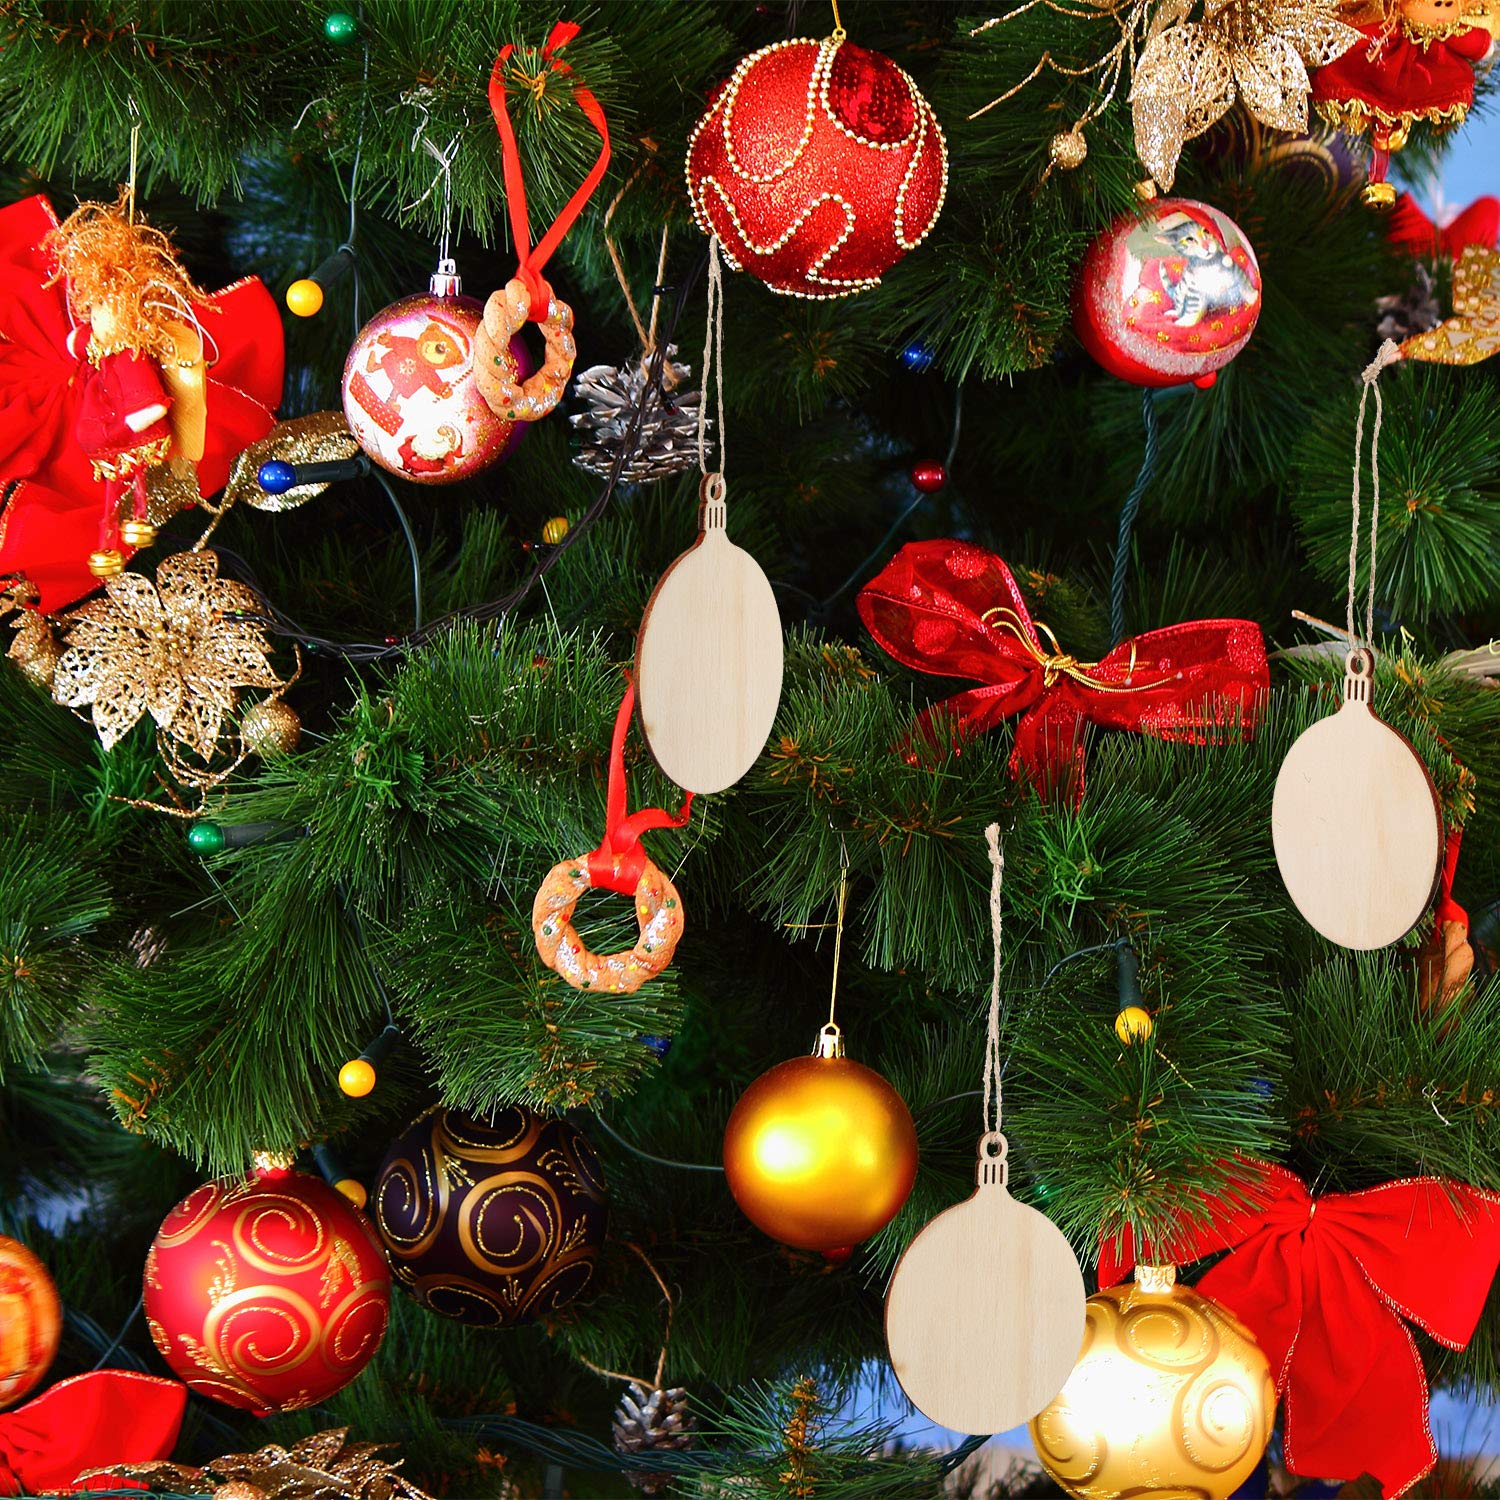 Decorazioni Natalizie Online.Palline Di Natale Non C E Albero Di Natale Senza Palline Scegli Le Piu Belle